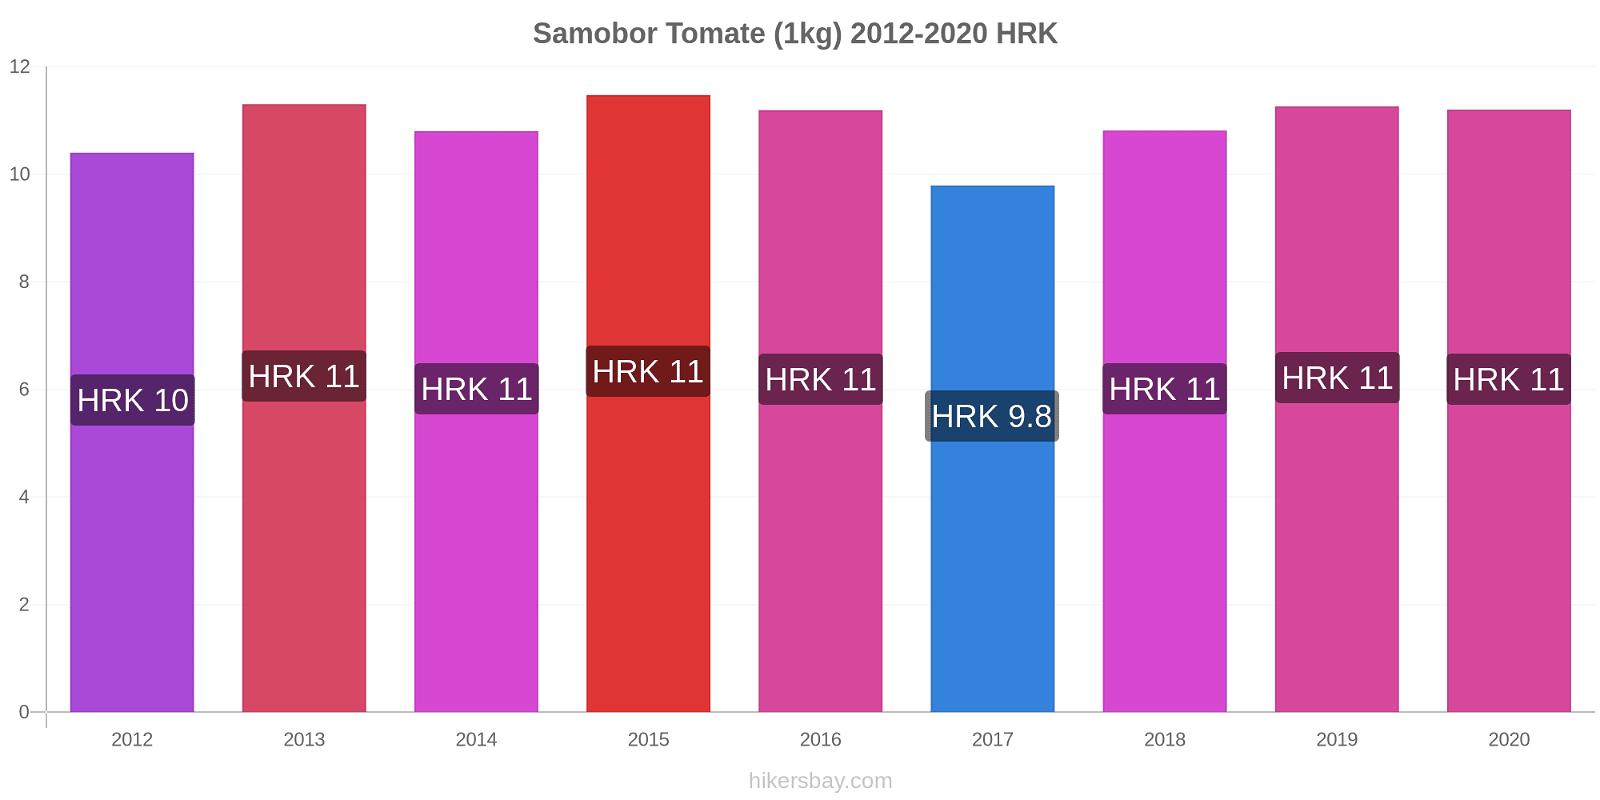 Samobor changements de prix Tomate (1kg) hikersbay.com